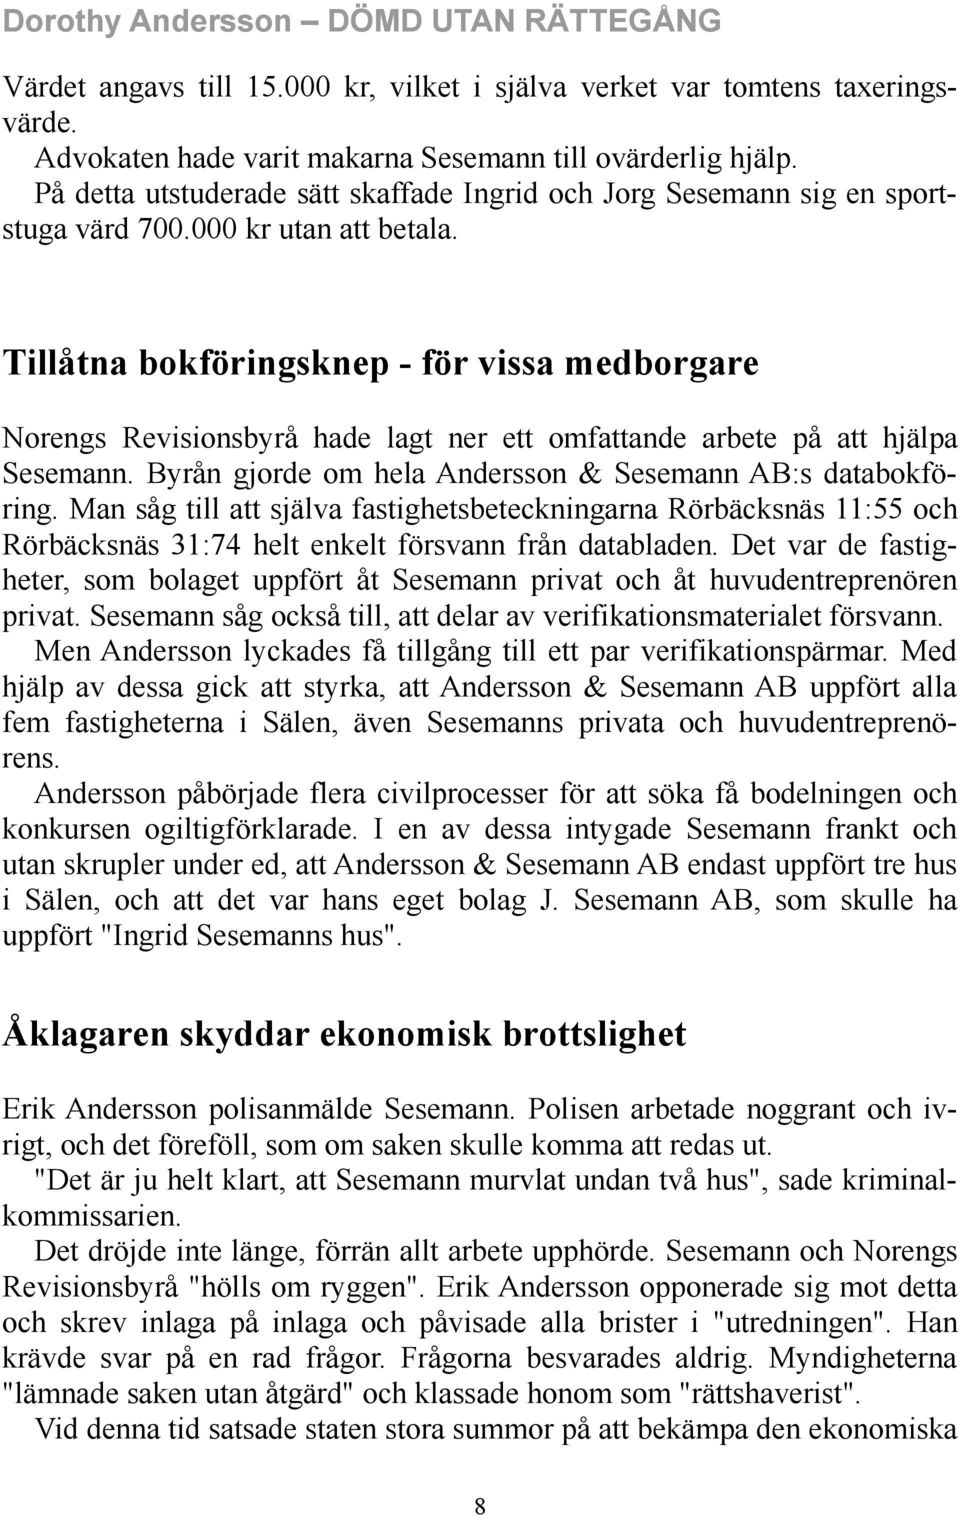 Tillåtna bokföringsknep - för vissa medborgare Norengs Revisionsbyrå hade lagt ner ett omfattande arbete på att hjälpa Sesemann. Byrån gjorde om hela Andersson & Sesemann AB:s databokföring.